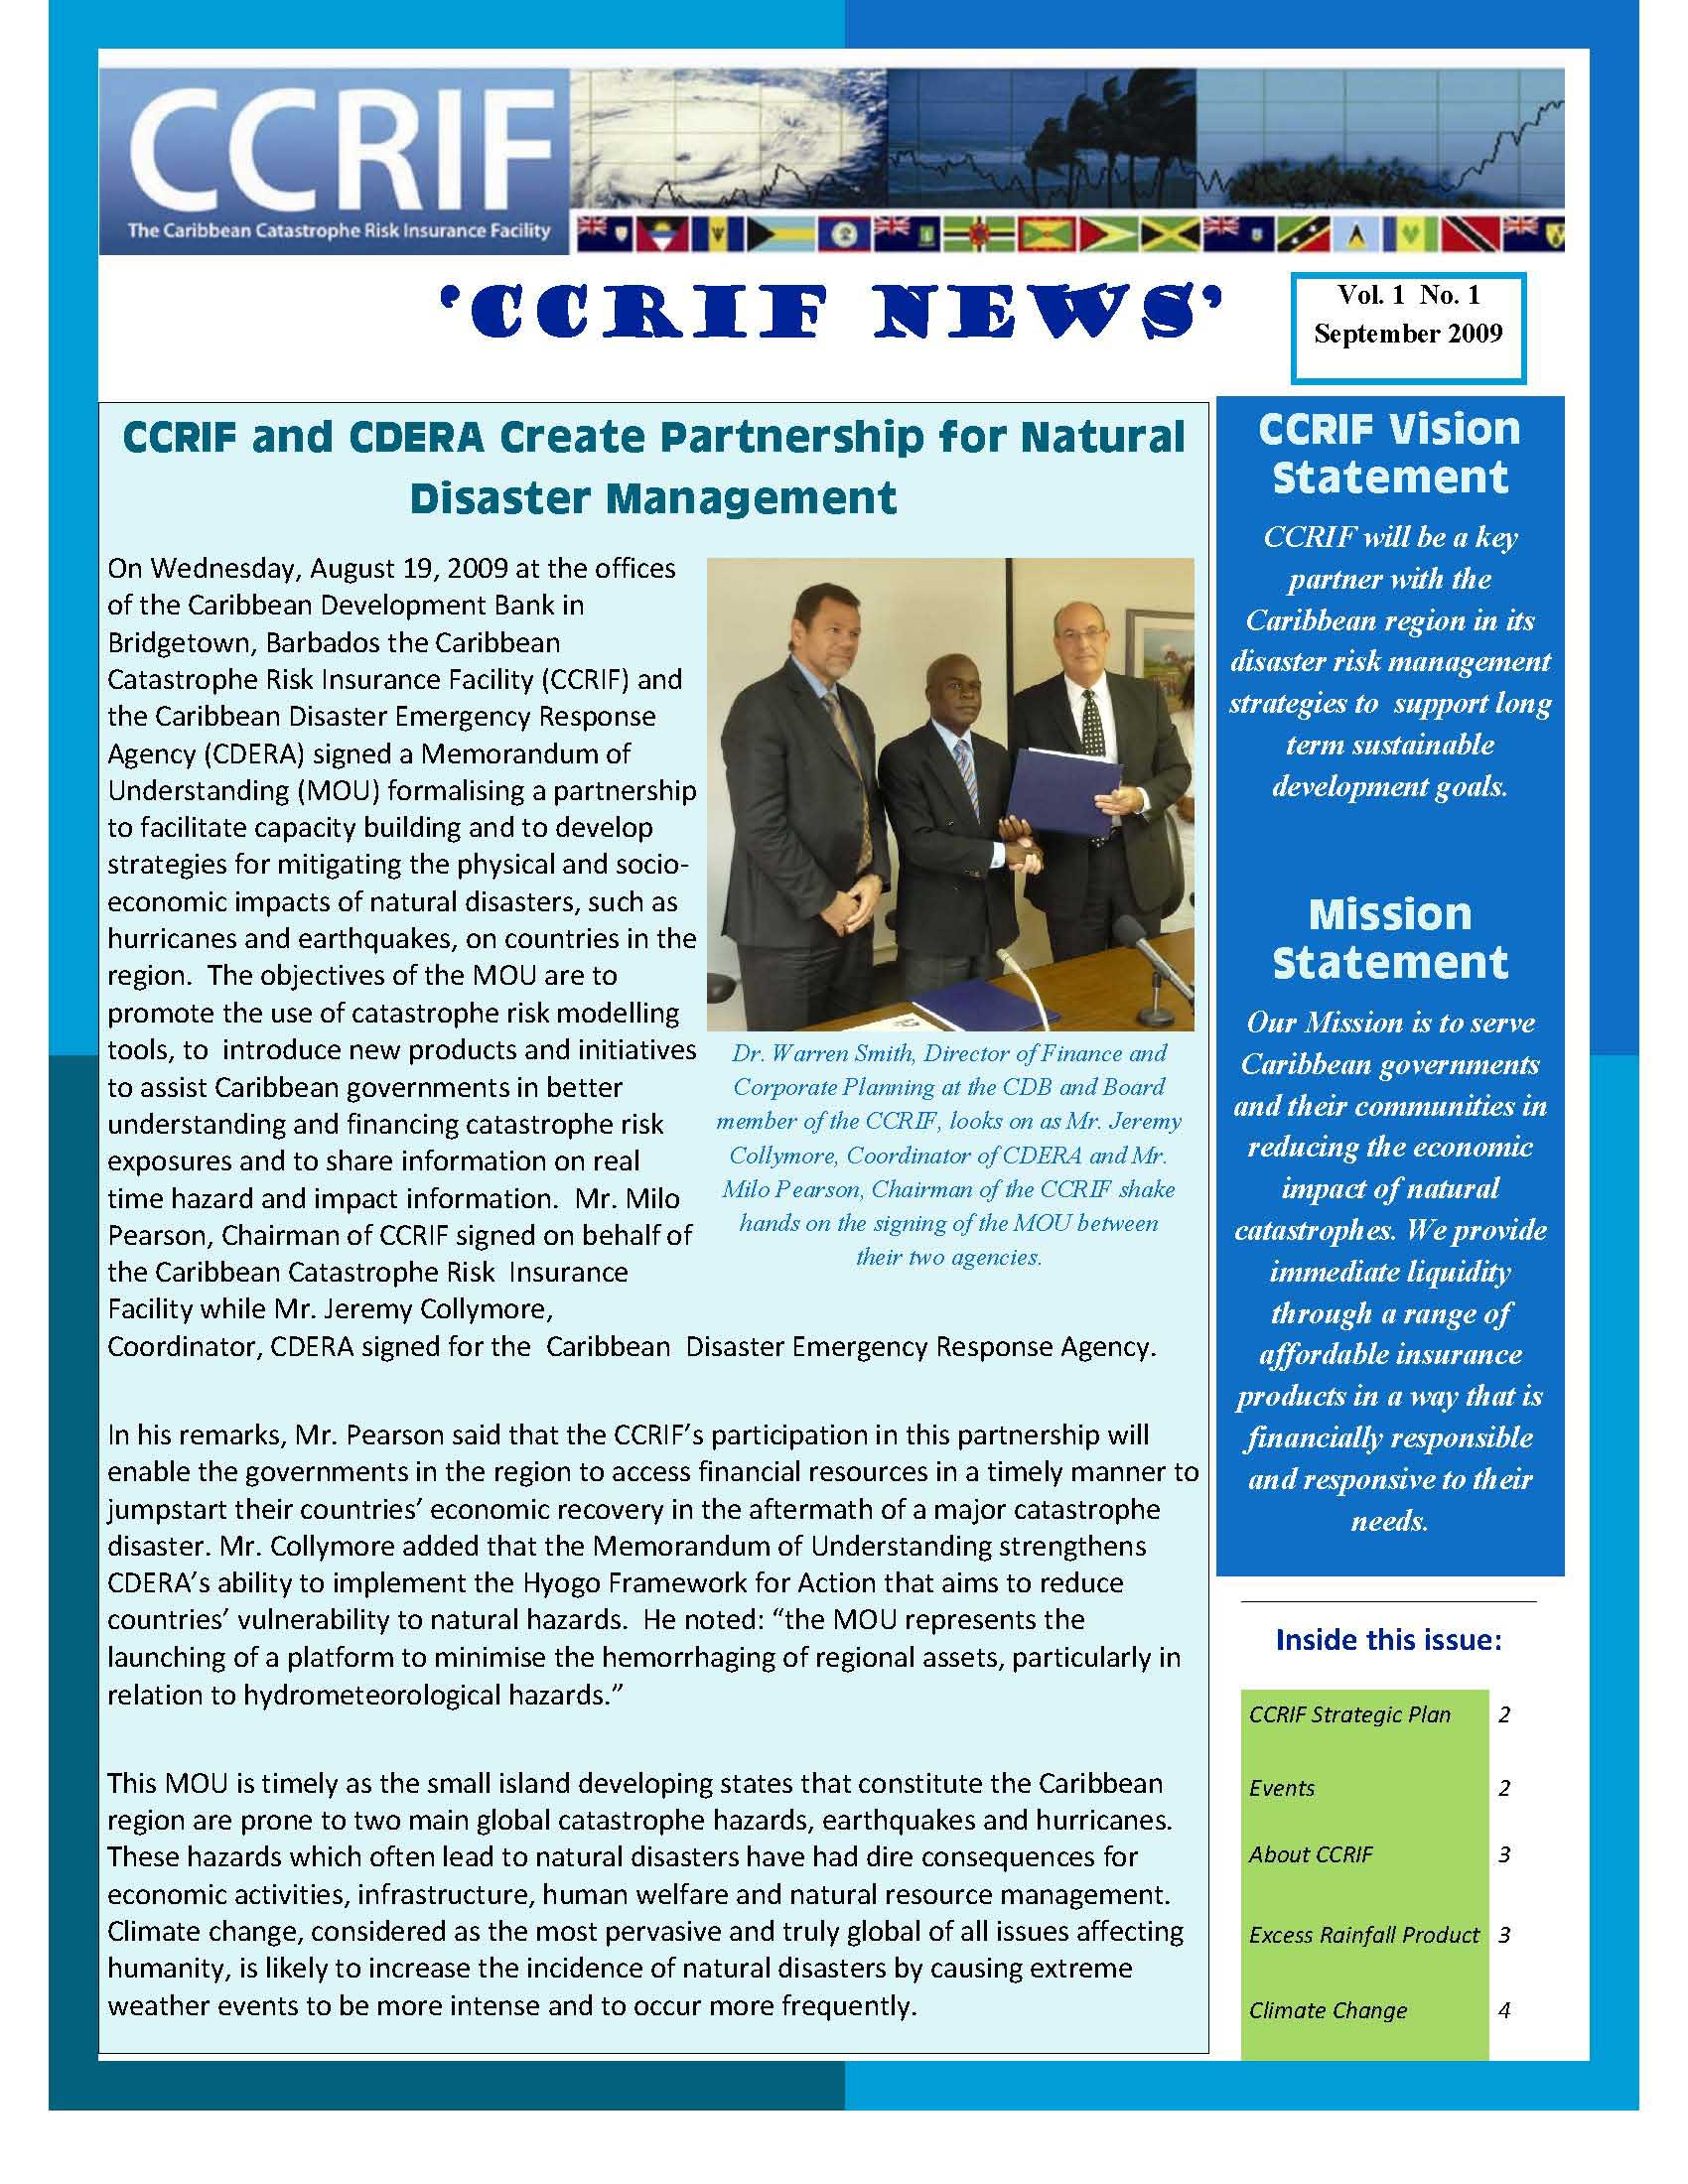 CCRIF News - Vol 1, No 1 -  September 2009